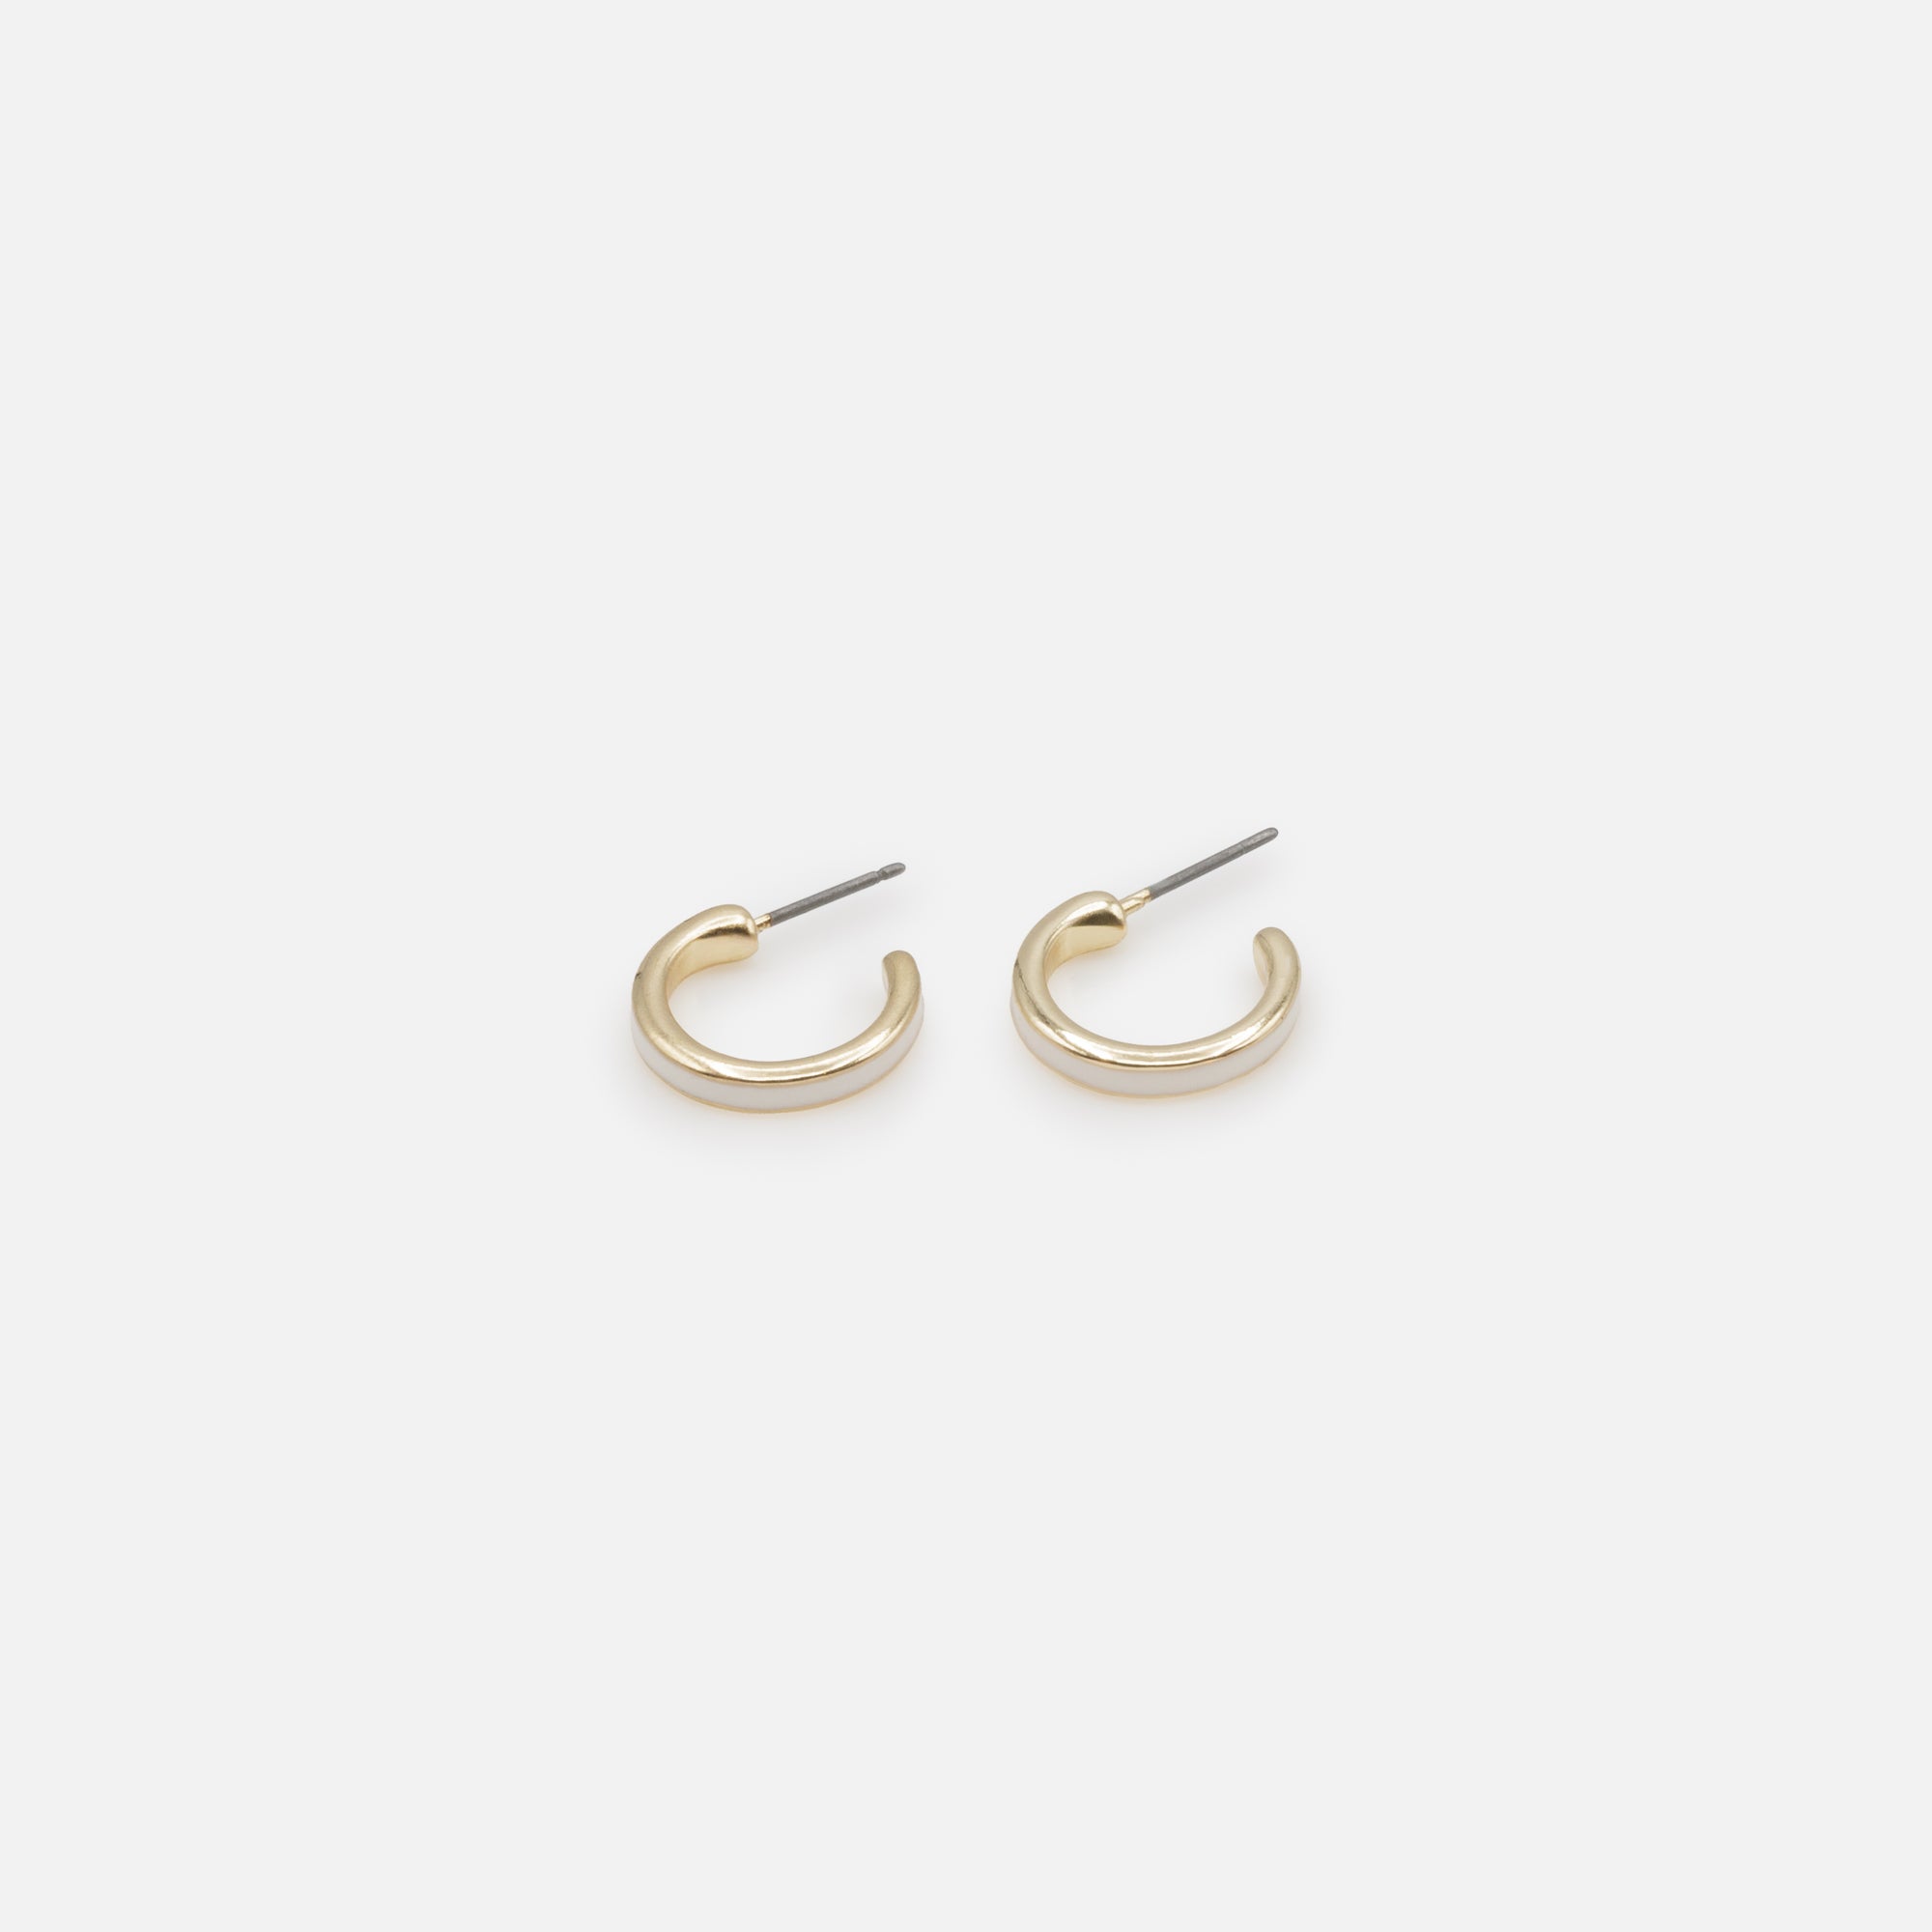 Duo de boucles d'oreilles anneaux dorés simples et à bande blanche